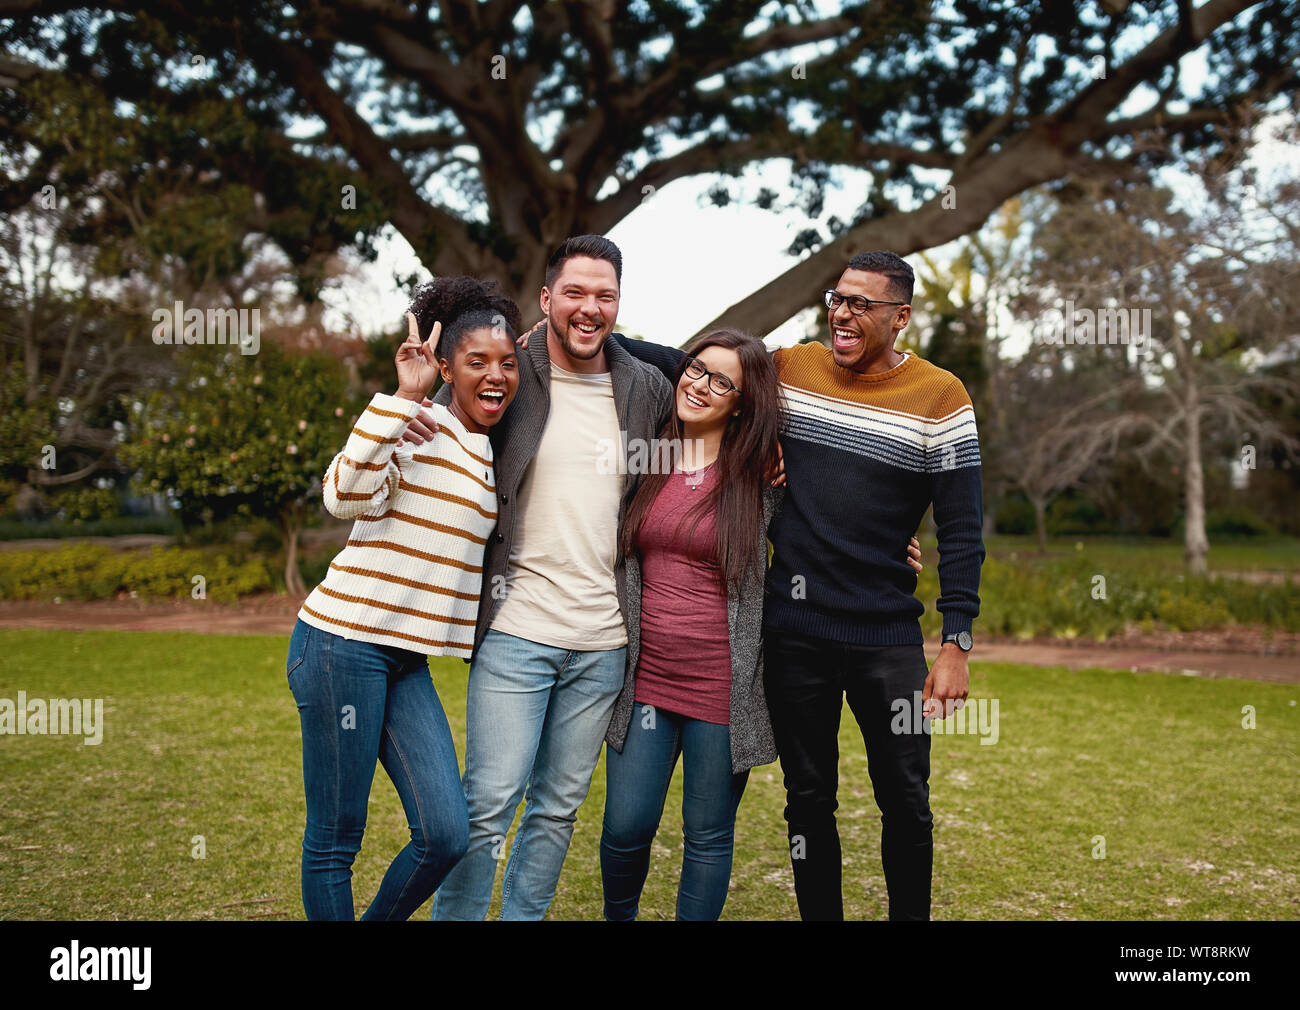 Groupe multiracial de Friends et unis dans l'park looking at camera smiling - vêtements très colorés Banque D'Images